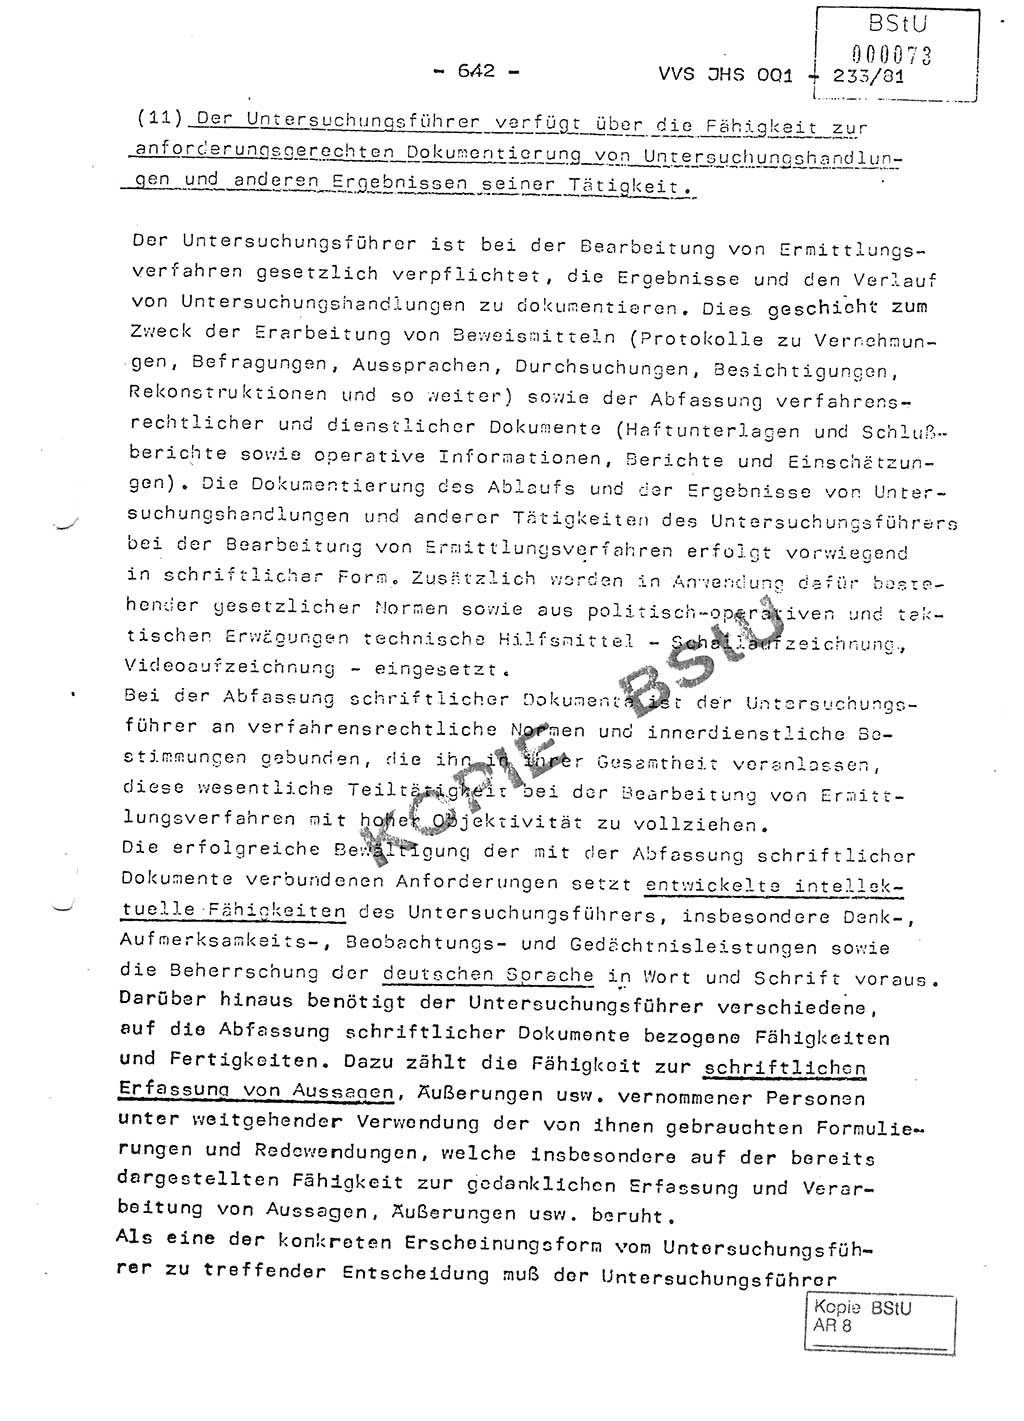 Dissertation Oberstleutnant Horst Zank (JHS), Oberstleutnant Dr. Karl-Heinz Knoblauch (JHS), Oberstleutnant Gustav-Adolf Kowalewski (HA Ⅸ), Oberstleutnant Wolfgang Plötner (HA Ⅸ), Ministerium für Staatssicherheit (MfS) [Deutsche Demokratische Republik (DDR)], Juristische Hochschule (JHS), Vertrauliche Verschlußsache (VVS) o001-233/81, Potsdam 1981, Blatt 642 (Diss. MfS DDR JHS VVS o001-233/81 1981, Bl. 642)